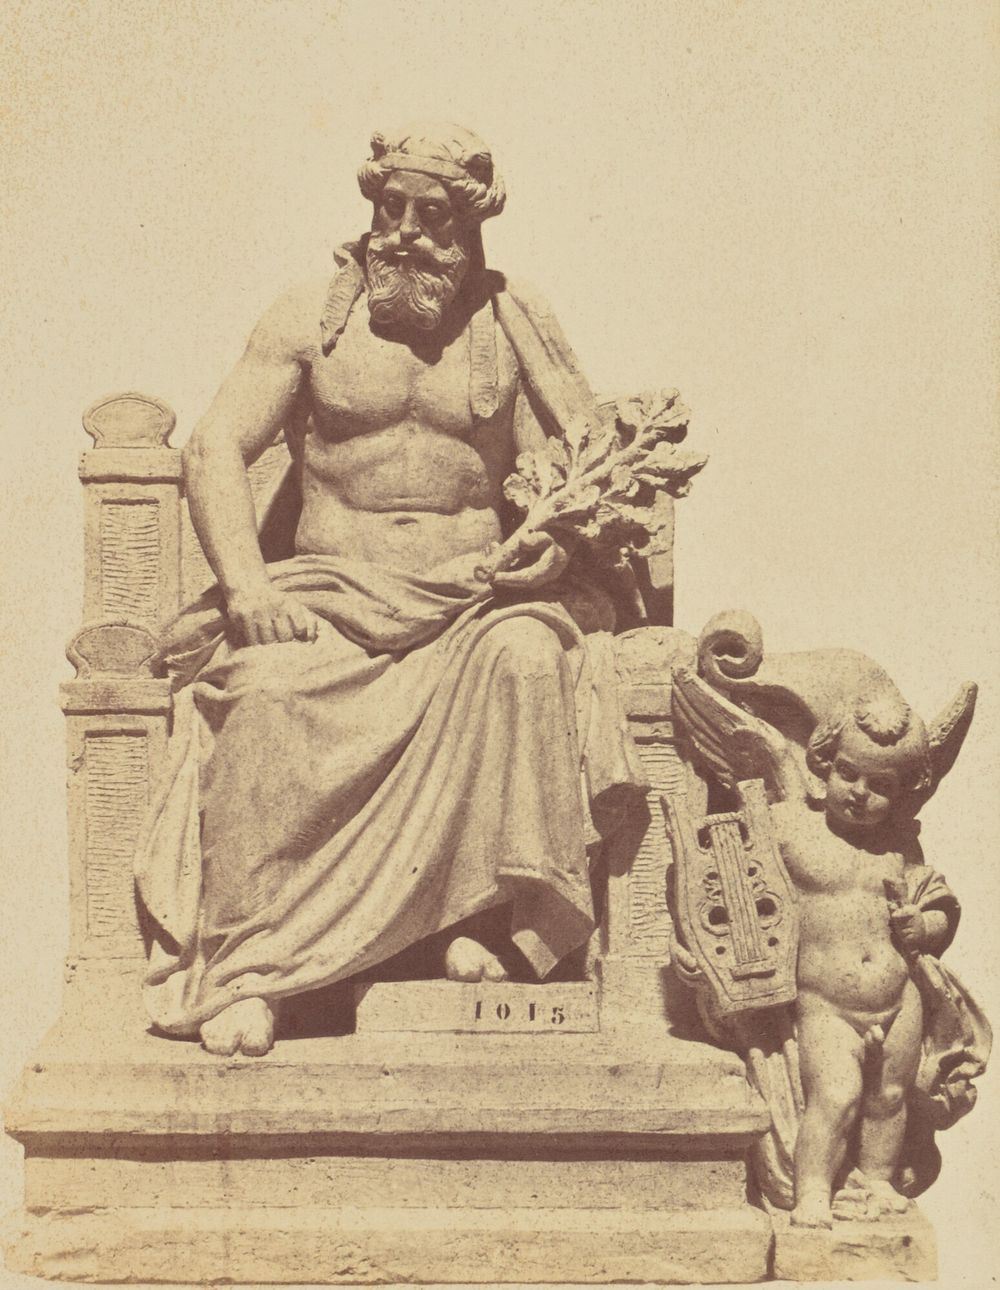 "L'Art grec", Sculpture by Gabriel Bernard Seurre, Decoration of the Louvre, Paris by Édouard Baldus